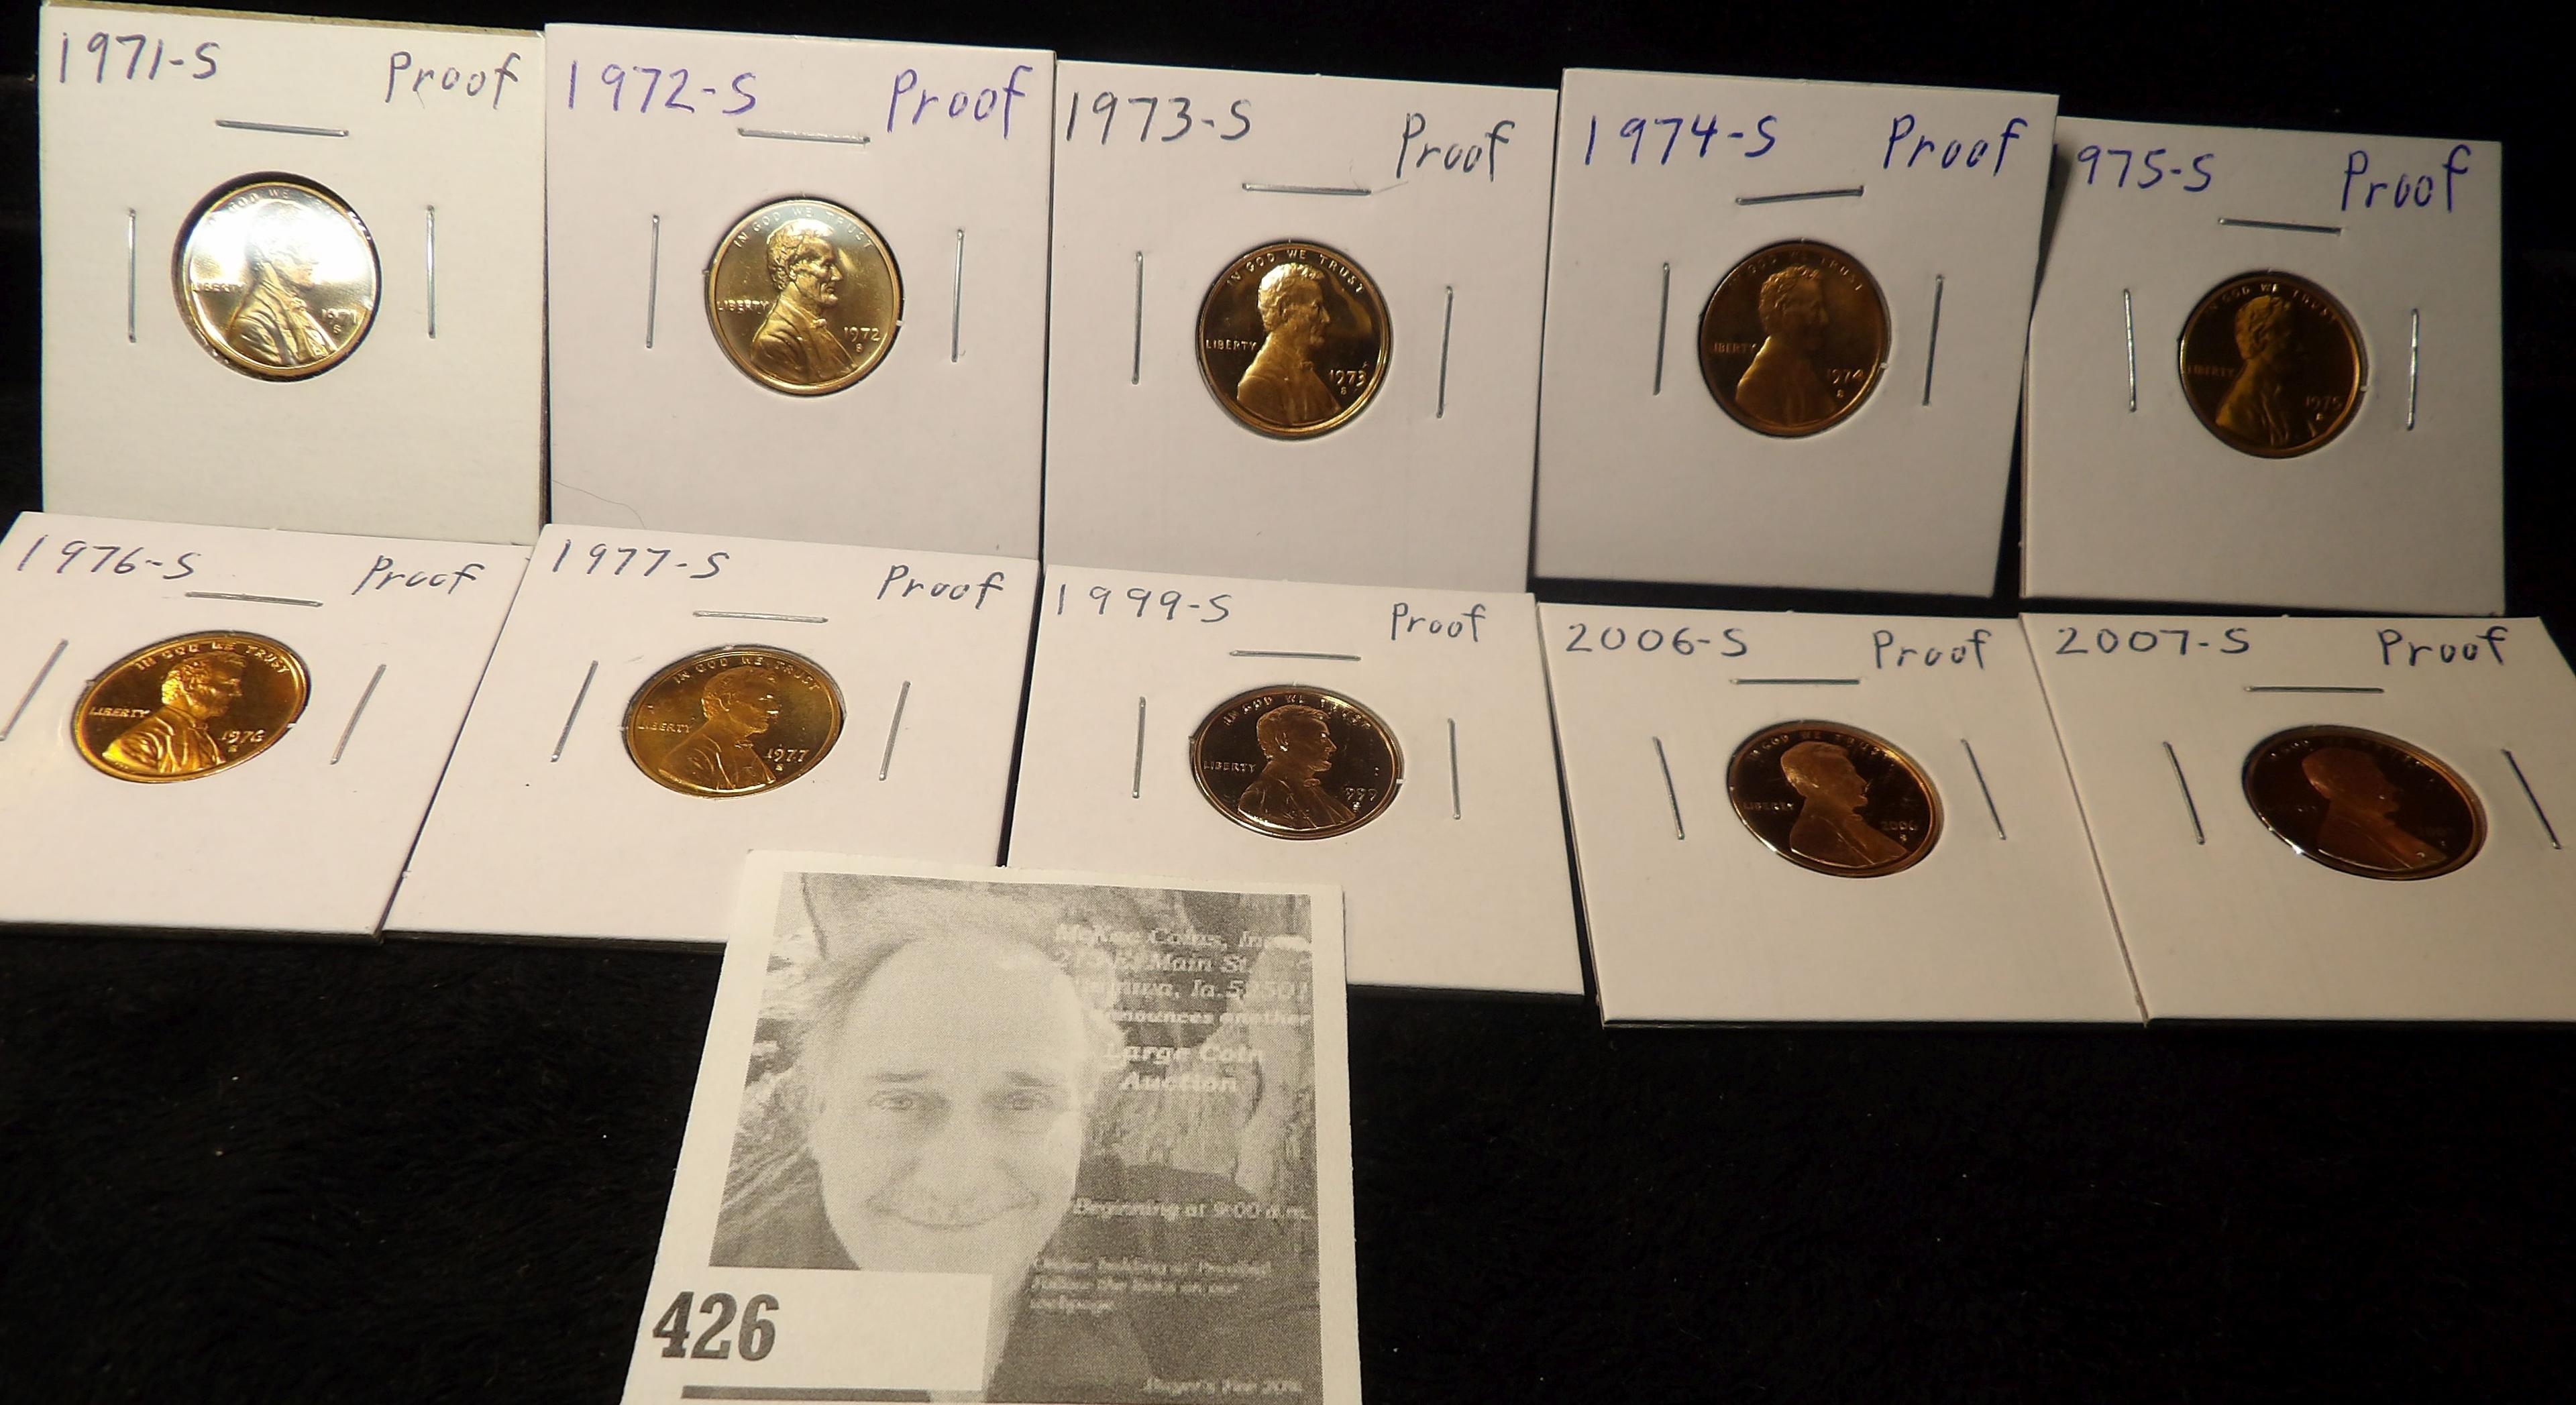 1971 S, 72 S, 73 S, 74 S, 75 S, 76 S, 77 S, 99 S, 2006 S & 2007 S Proof Lincoln Cents. All carded.